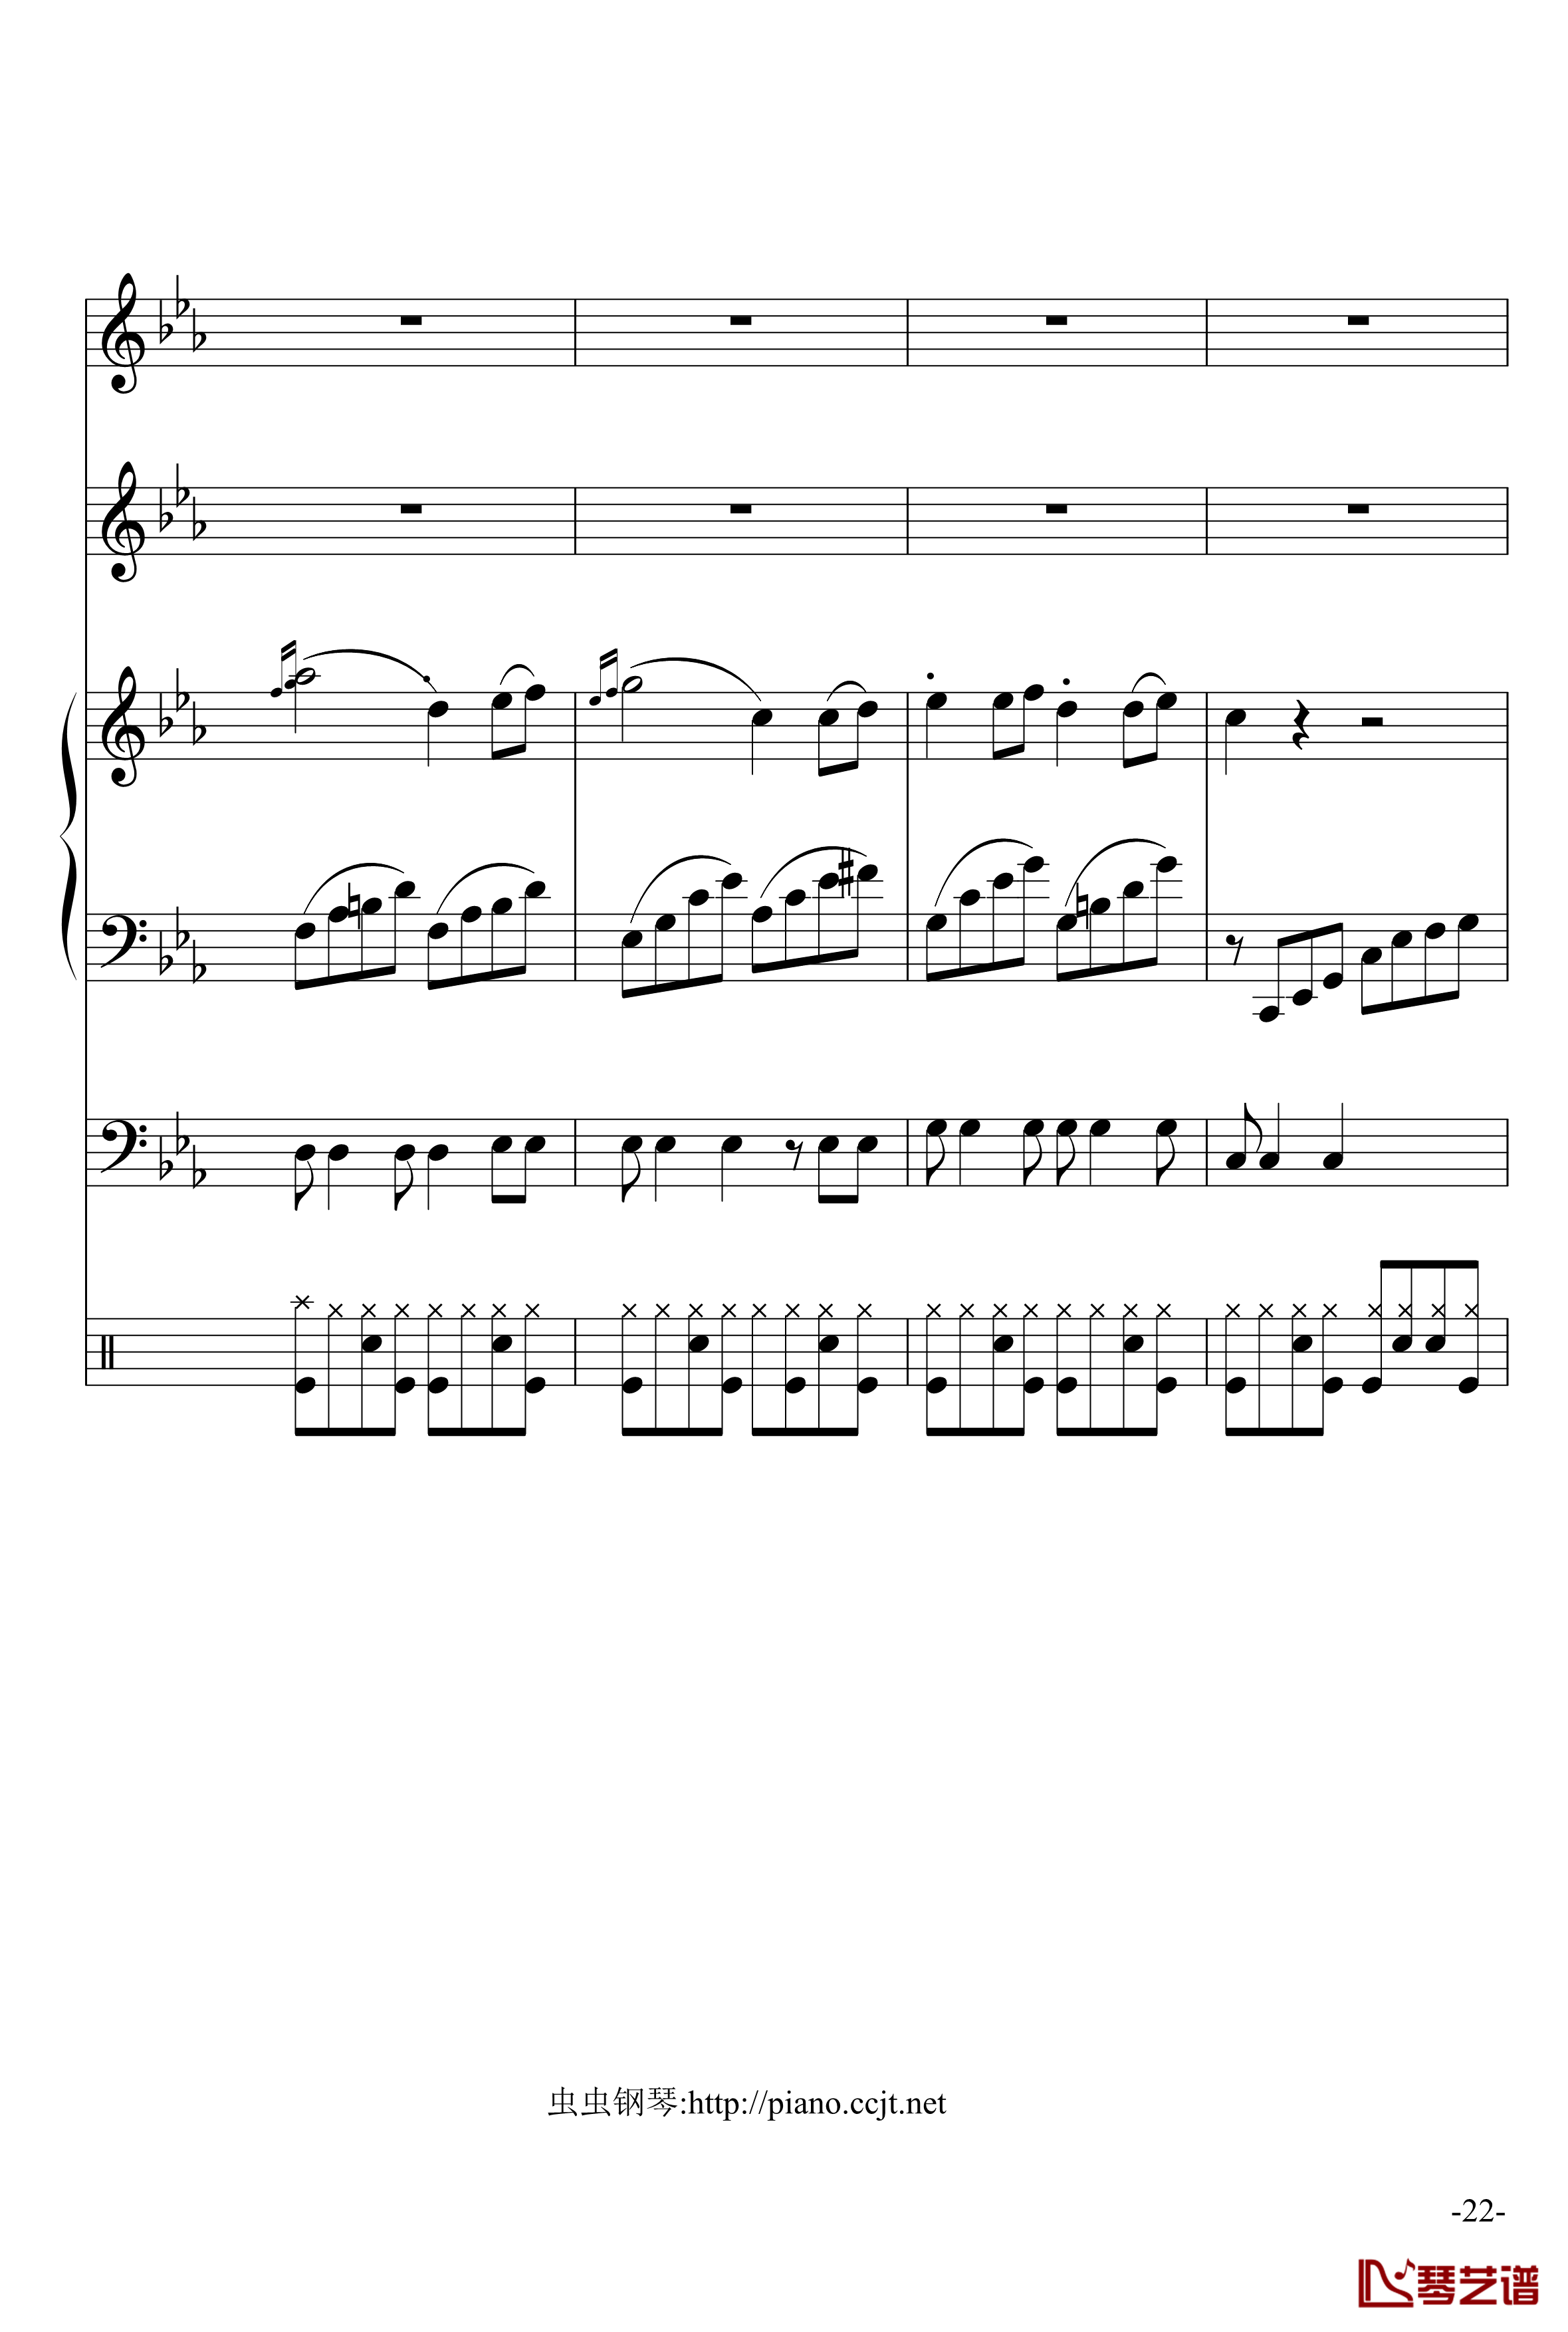 悲怆奏鸣曲钢琴谱-加小乐队-贝多芬-beethoven22